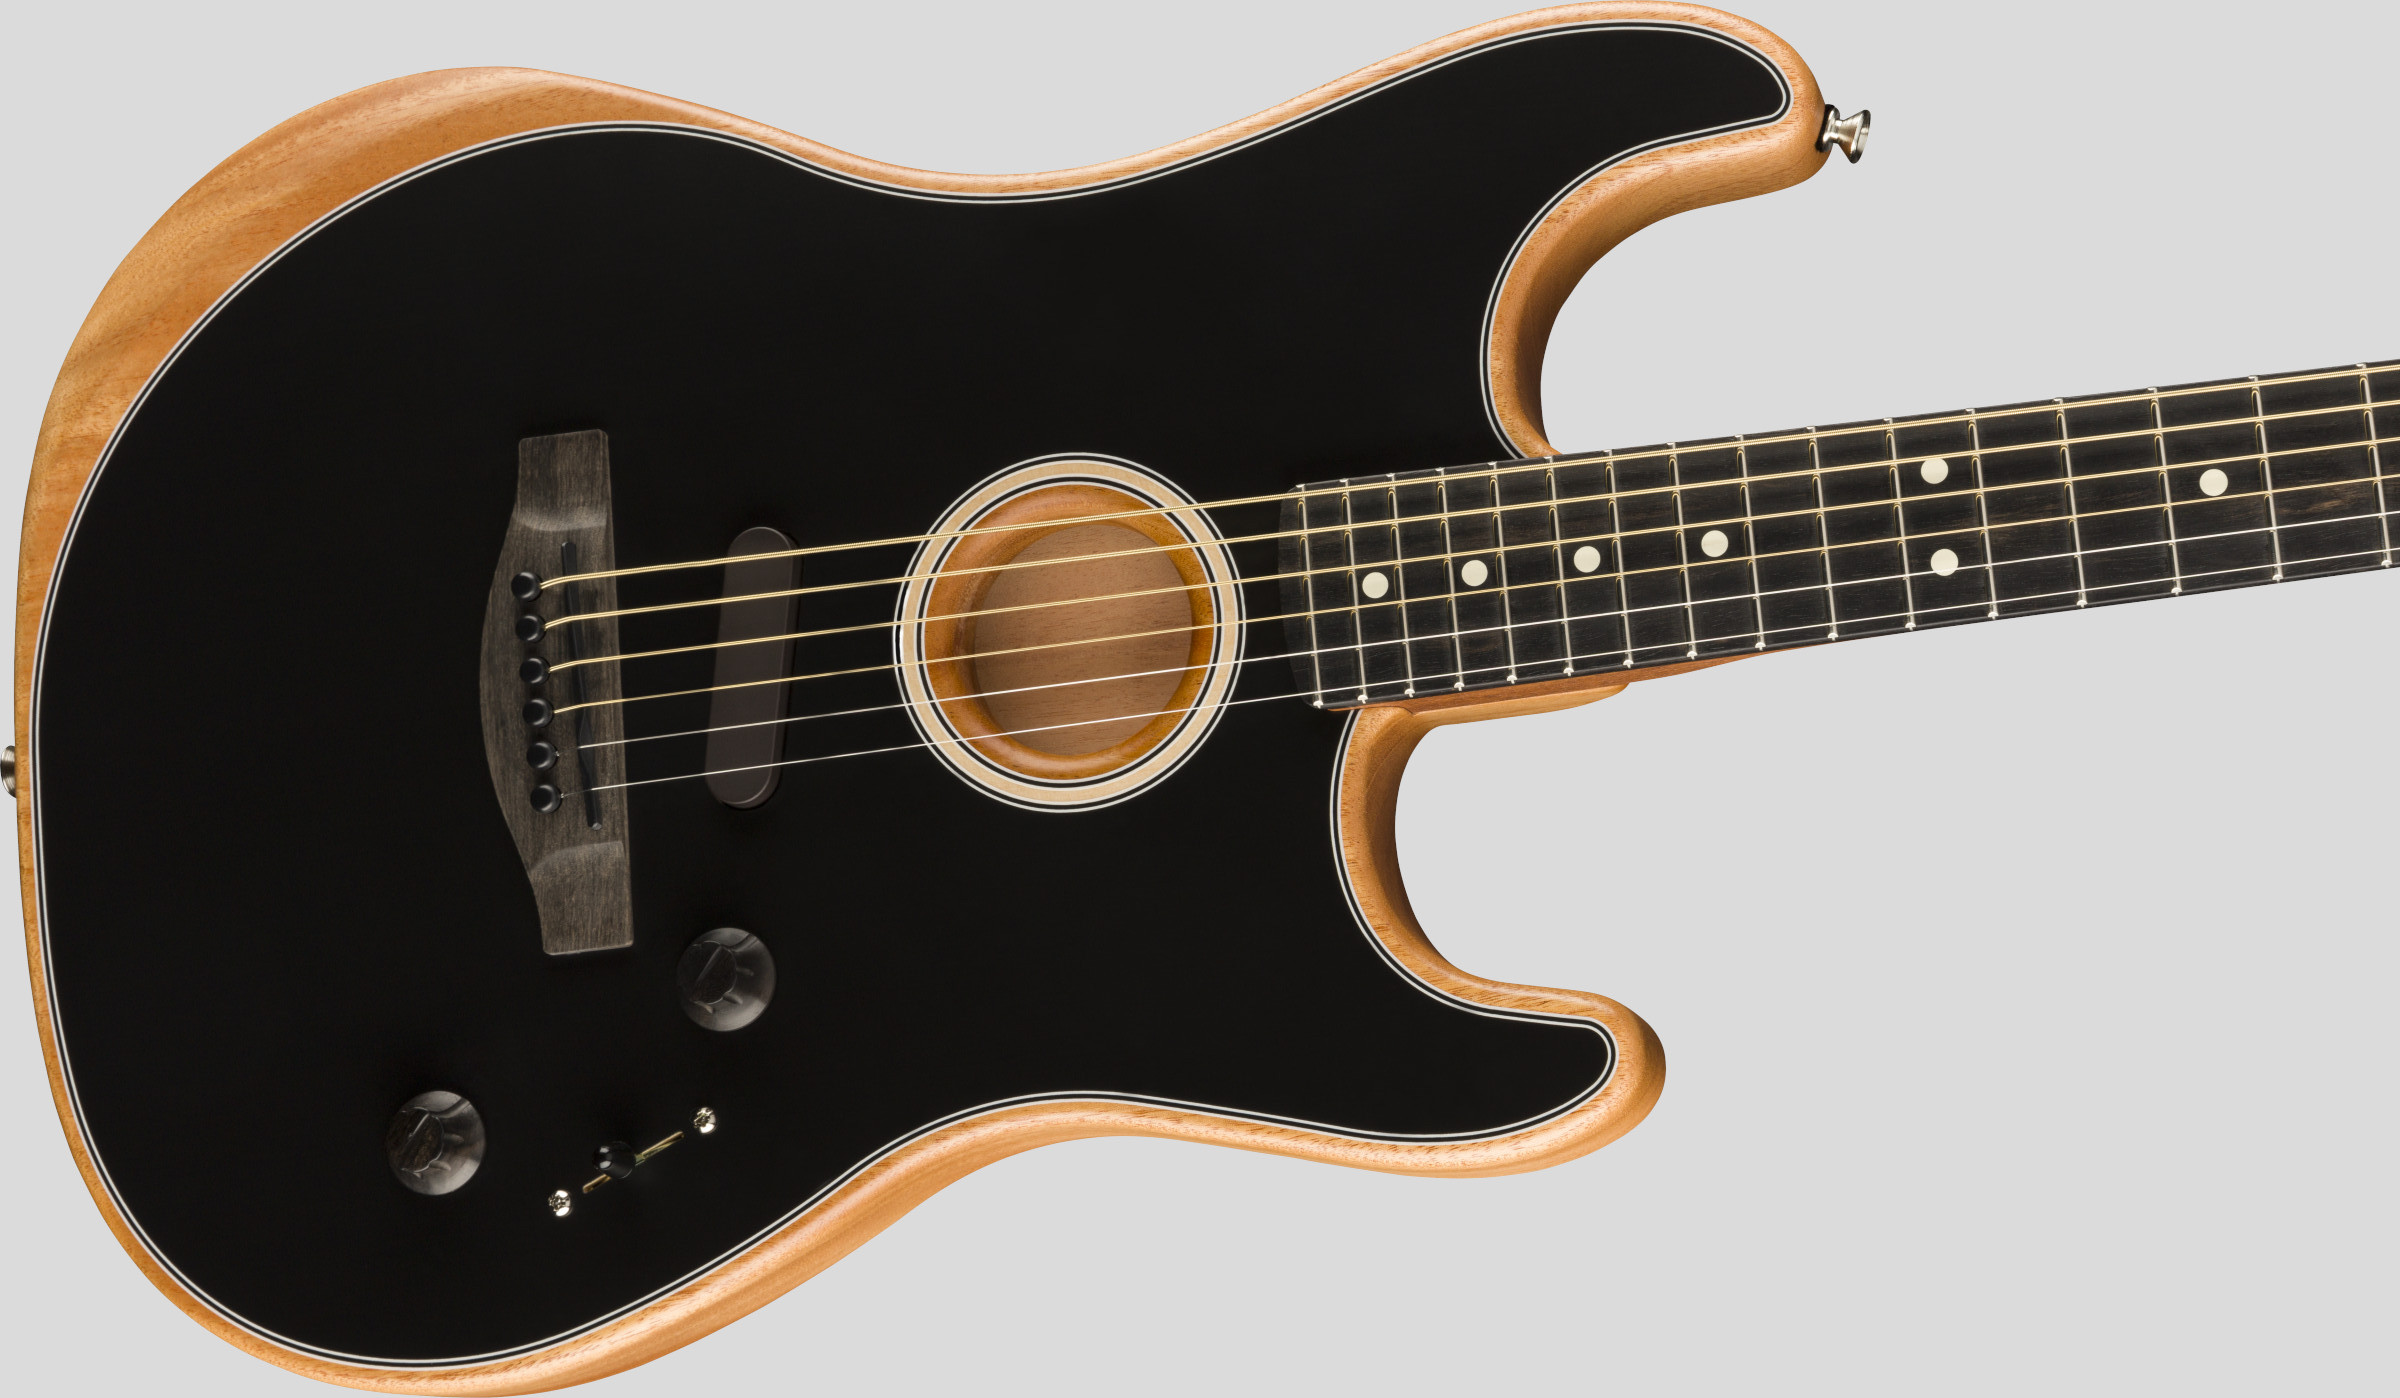 Fender American Acoustasonic Stratocaster Black 3